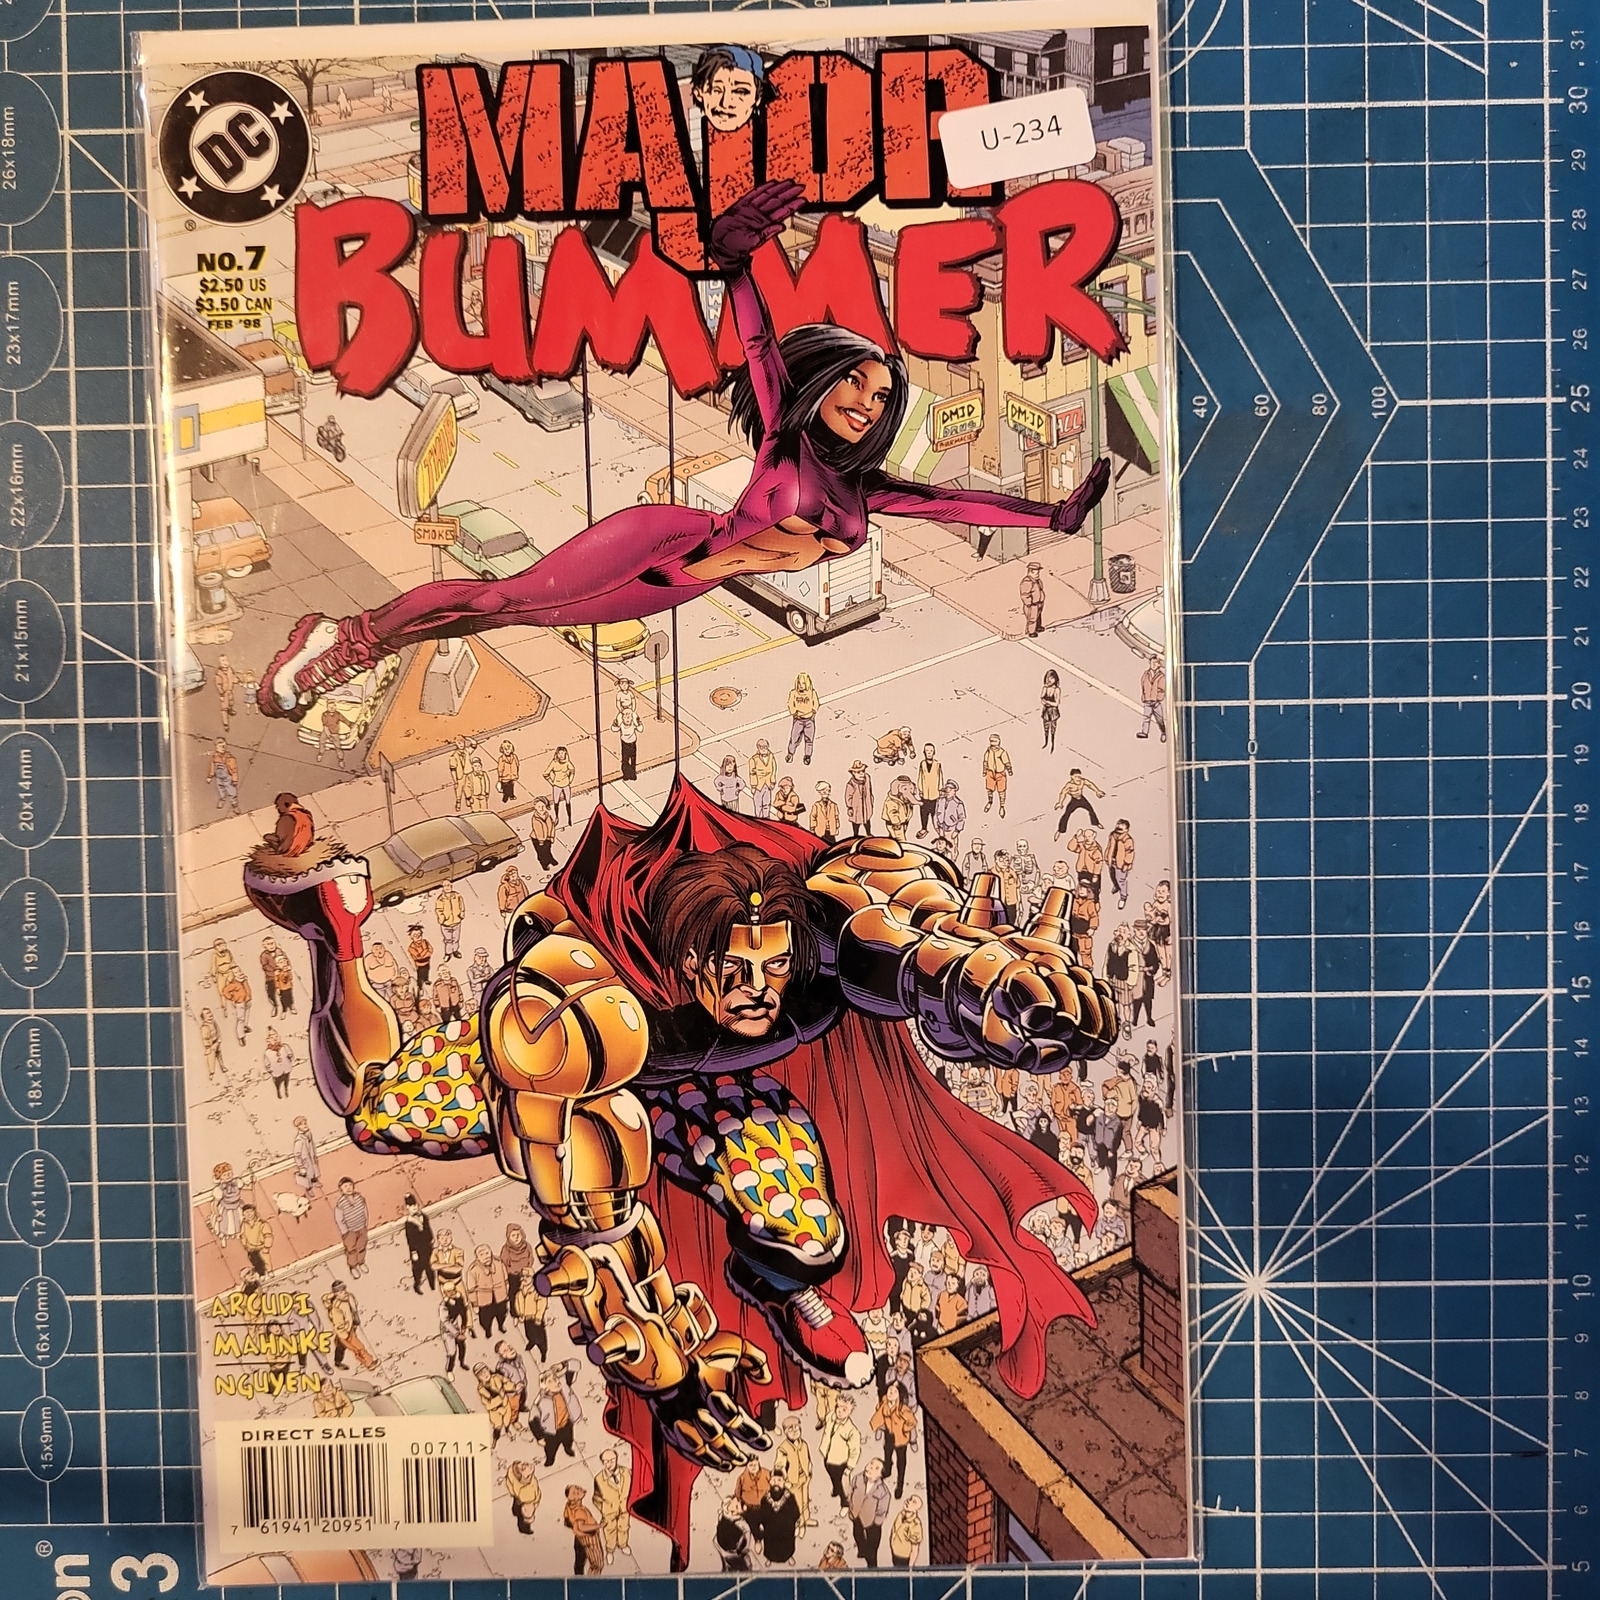 MAJOR BUMMER #7 9.0+ DC COMIC BOOK U-234